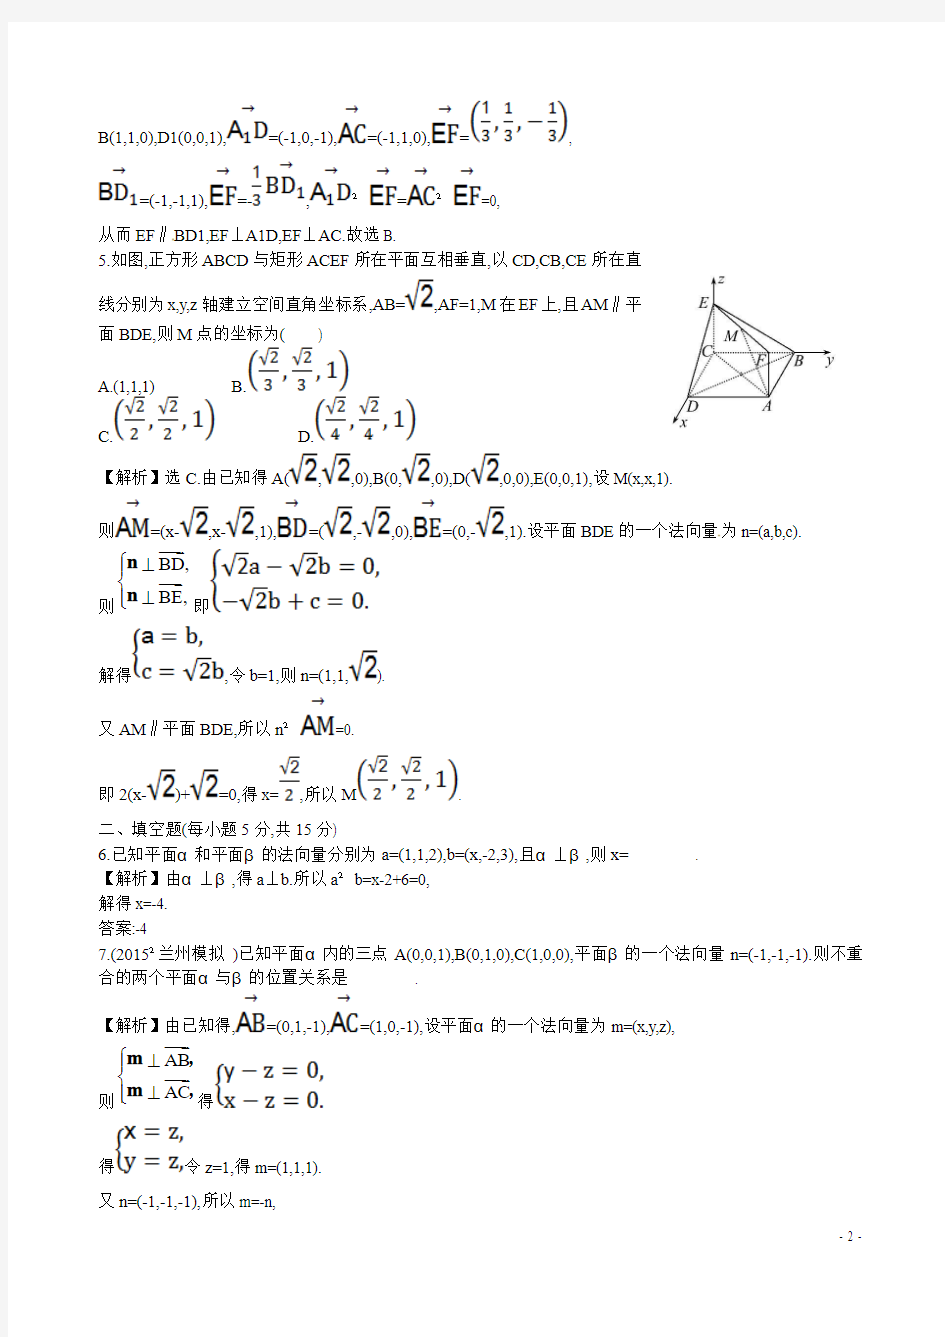 【全程复习方略】(全国通用)2016高考数学 7.7 立体几何中的向量方法(一)--证明空间中的位置关系练习